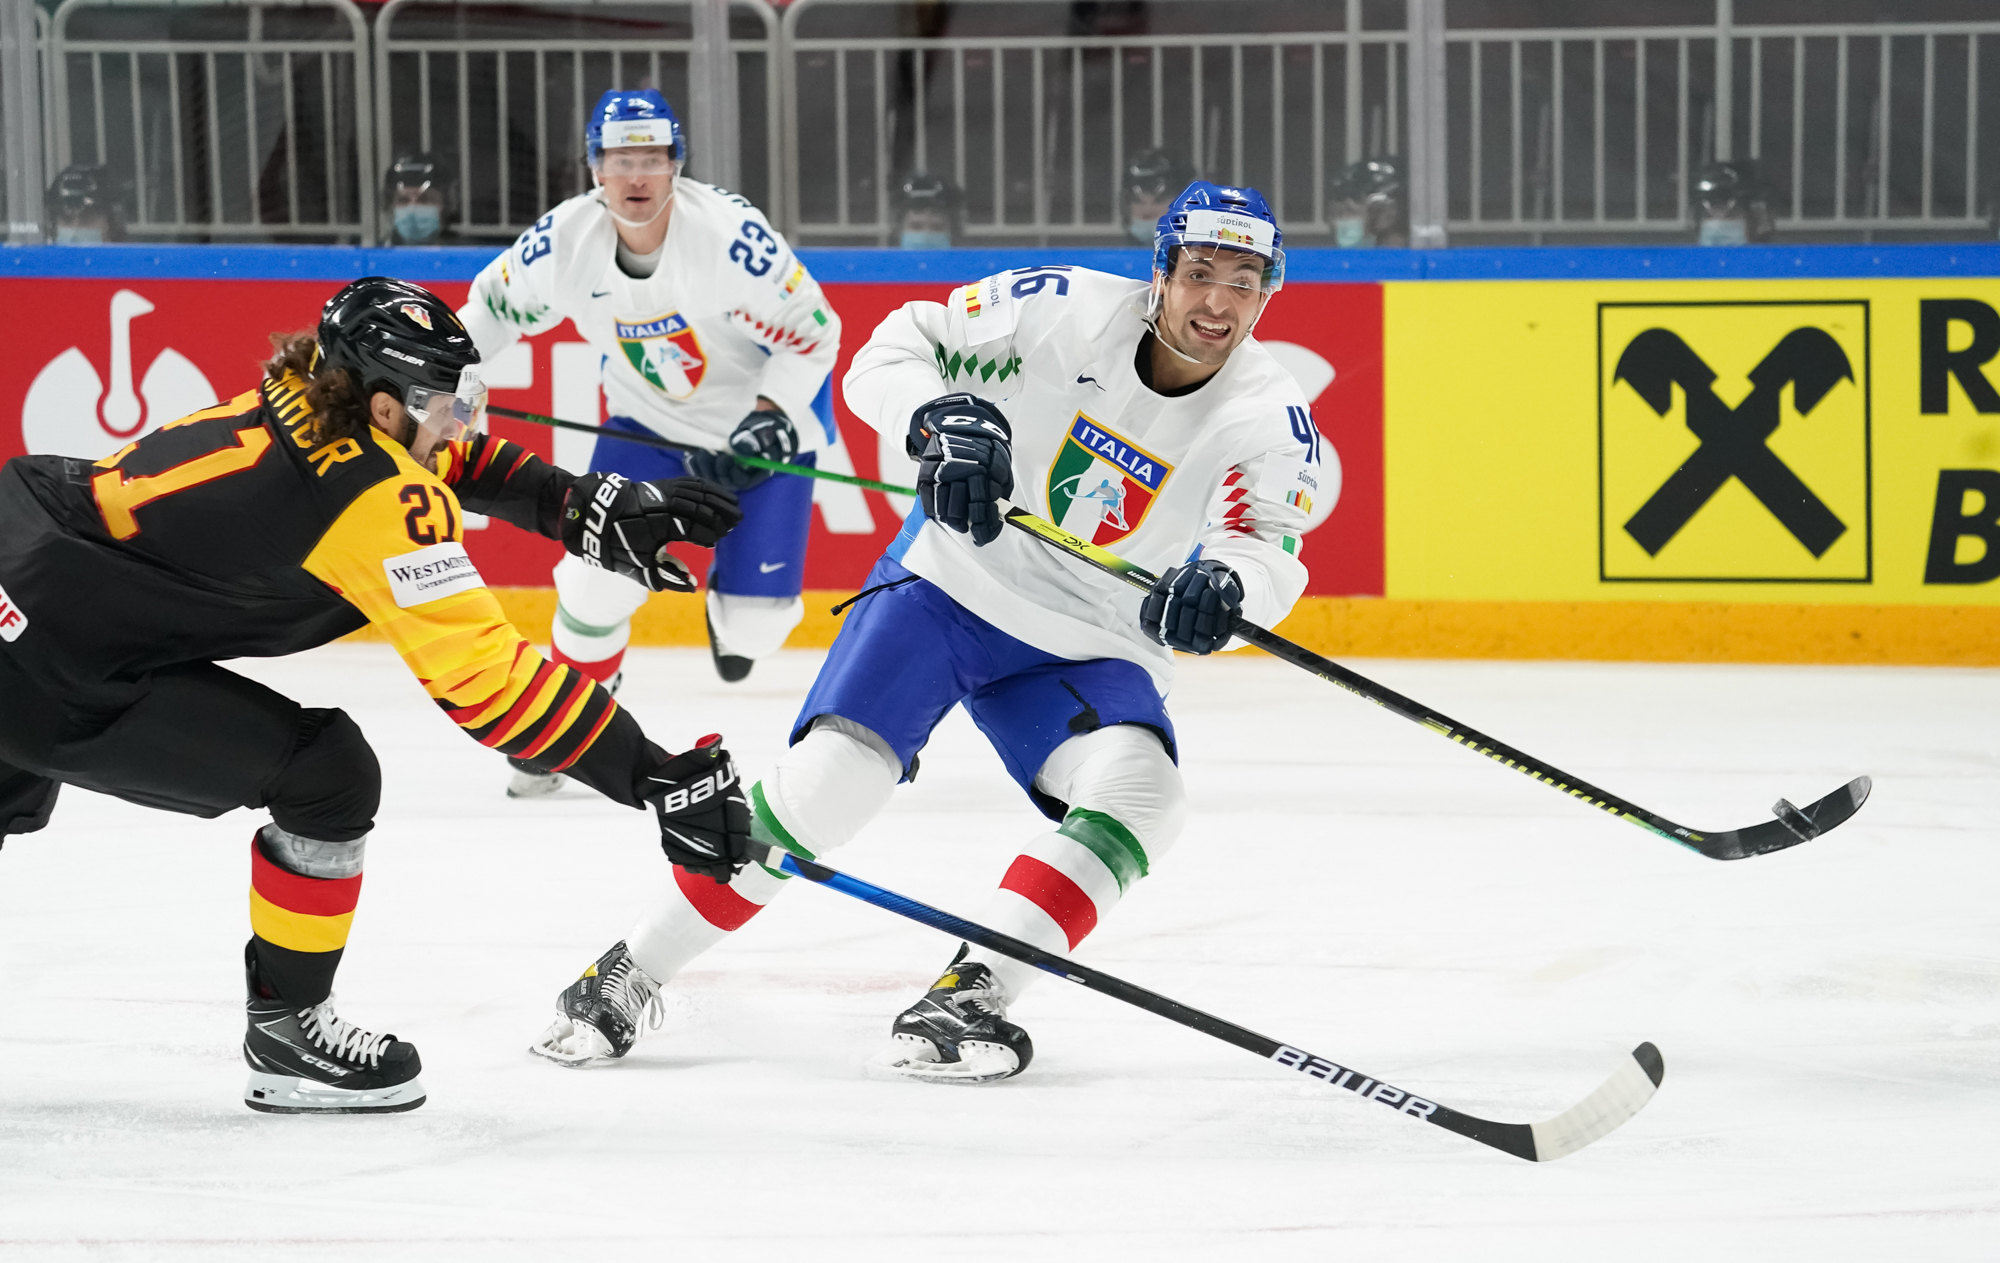 IIHF - Gallery: Germany vs Italy - 2021 IIHF Ice Hockey World Championship